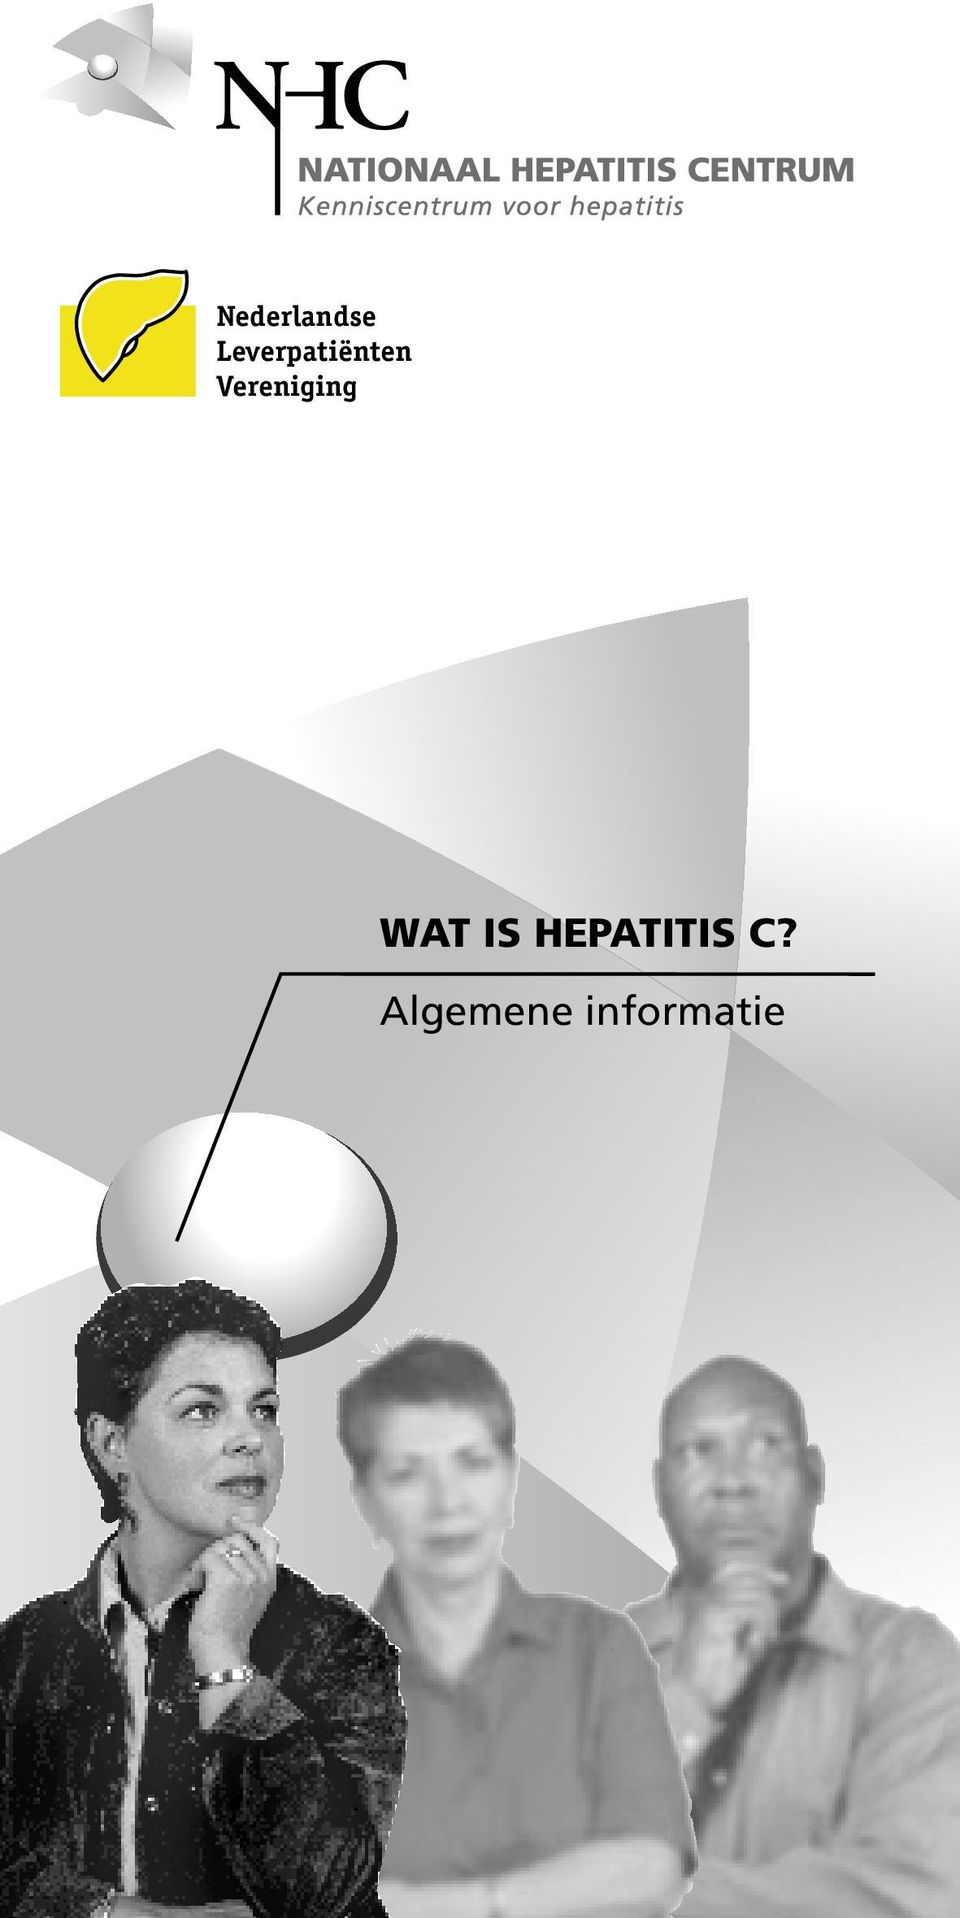 IS HEPATITIS C?